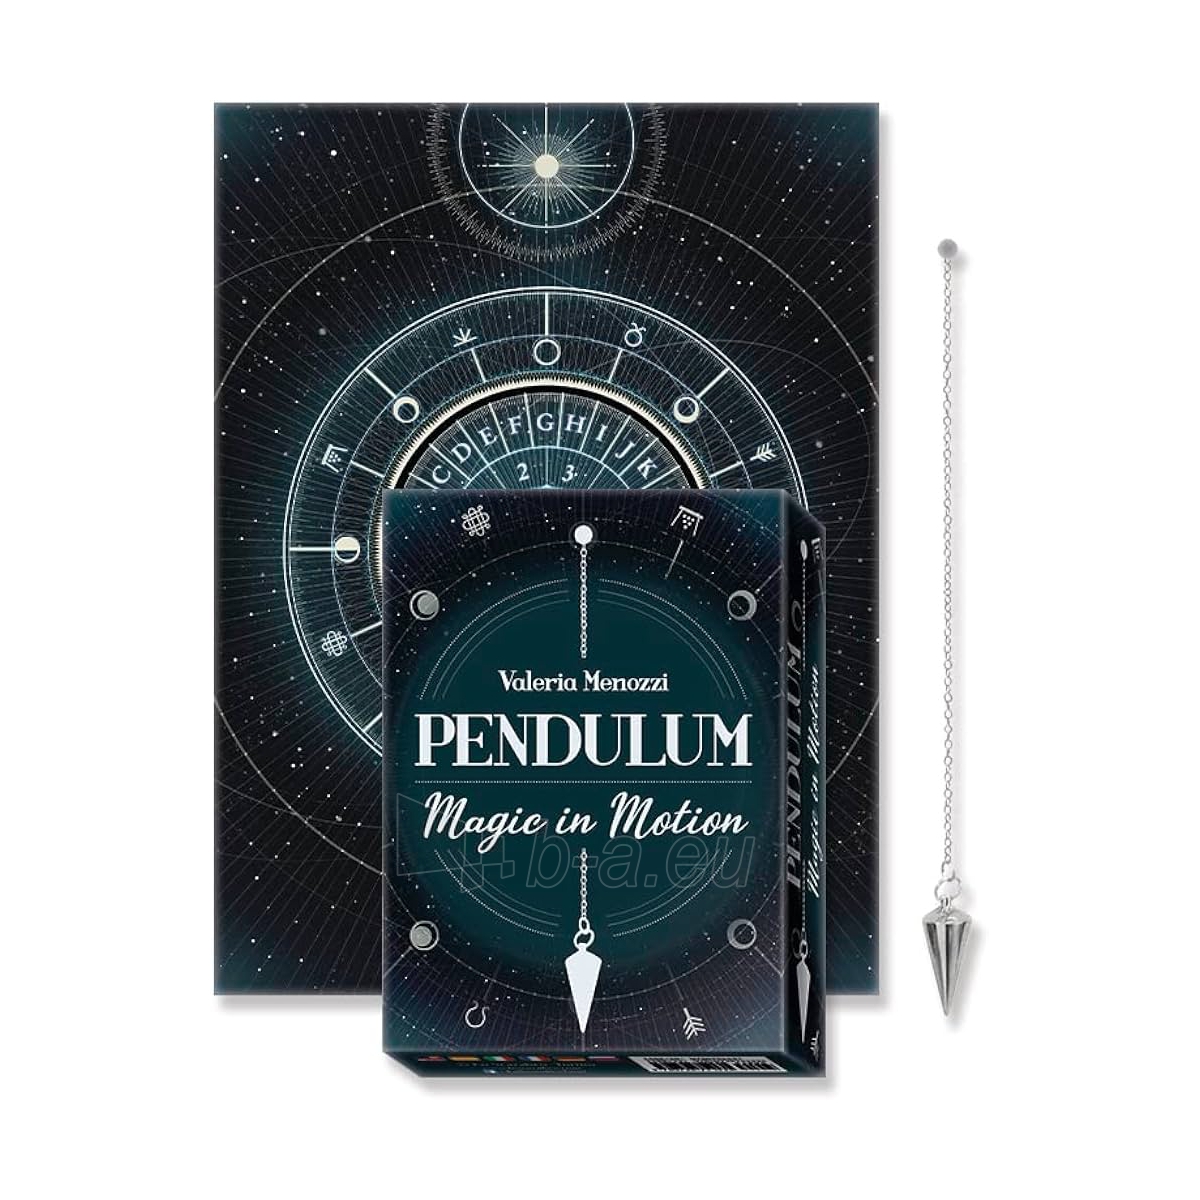 Švytuoklės rinkinys Pendulum Magic in Motion Lo Scarabeo paveikslėlis 4 iš 5